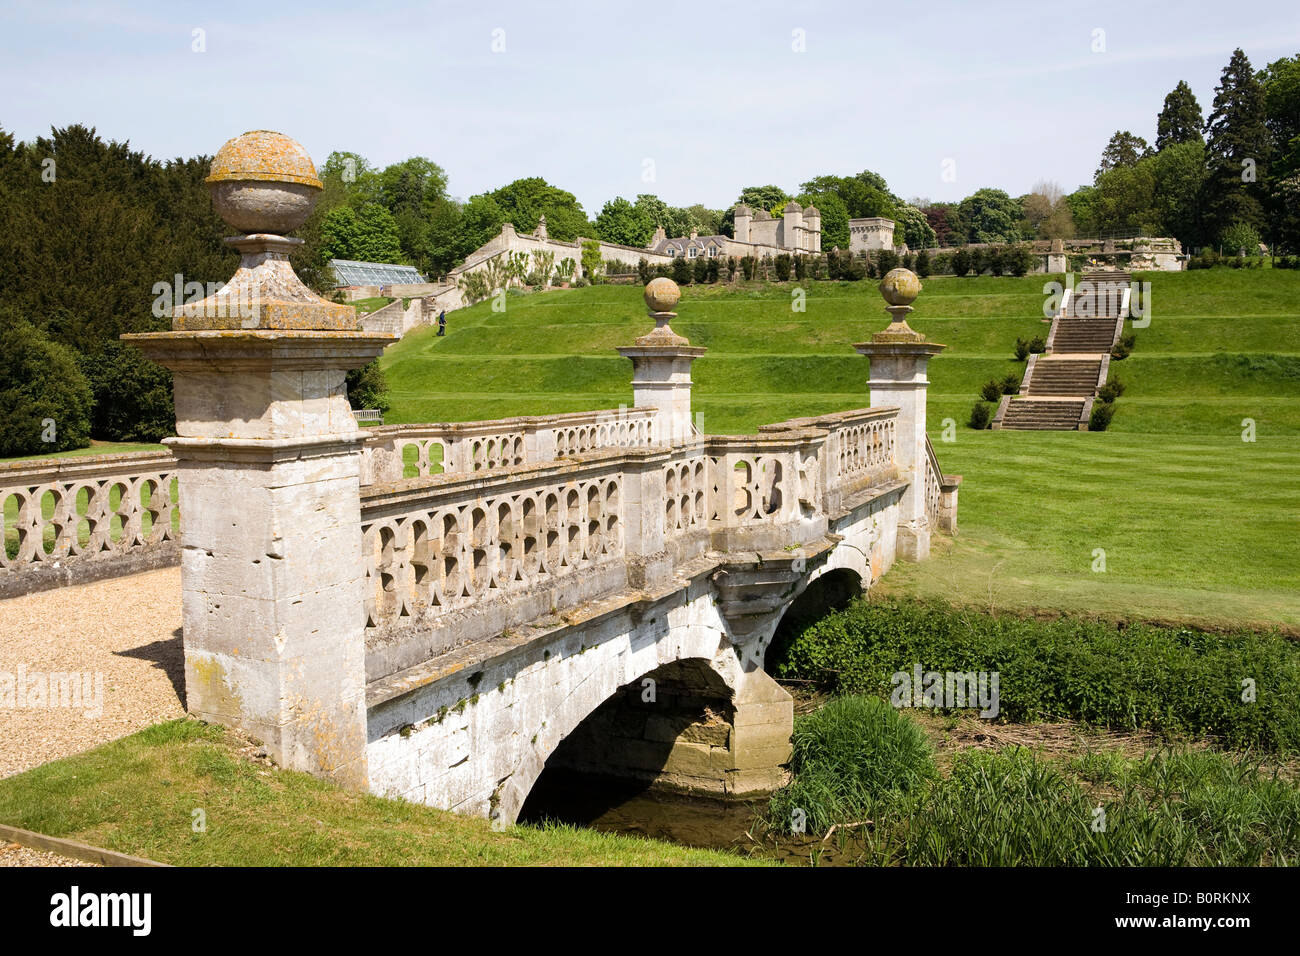 UK England Lincolnshire Easton in der Nähe von Grantham Easton Hall Walled Tudor Garten Steinbrücke Stockfoto